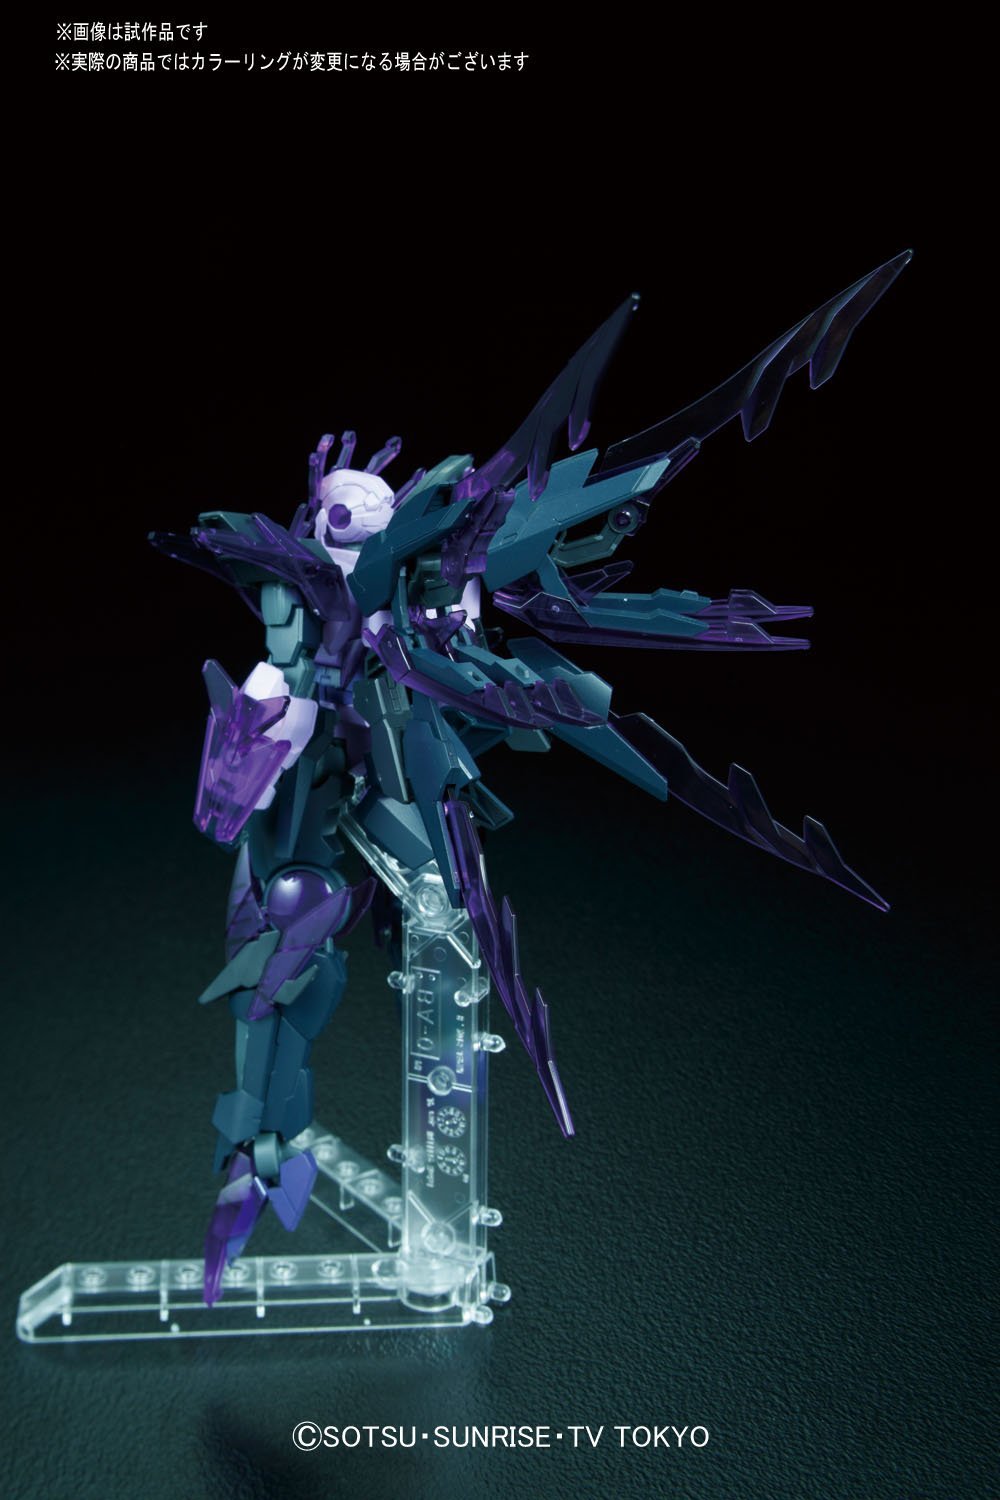 HG Gundam Transient Glacier 1/144